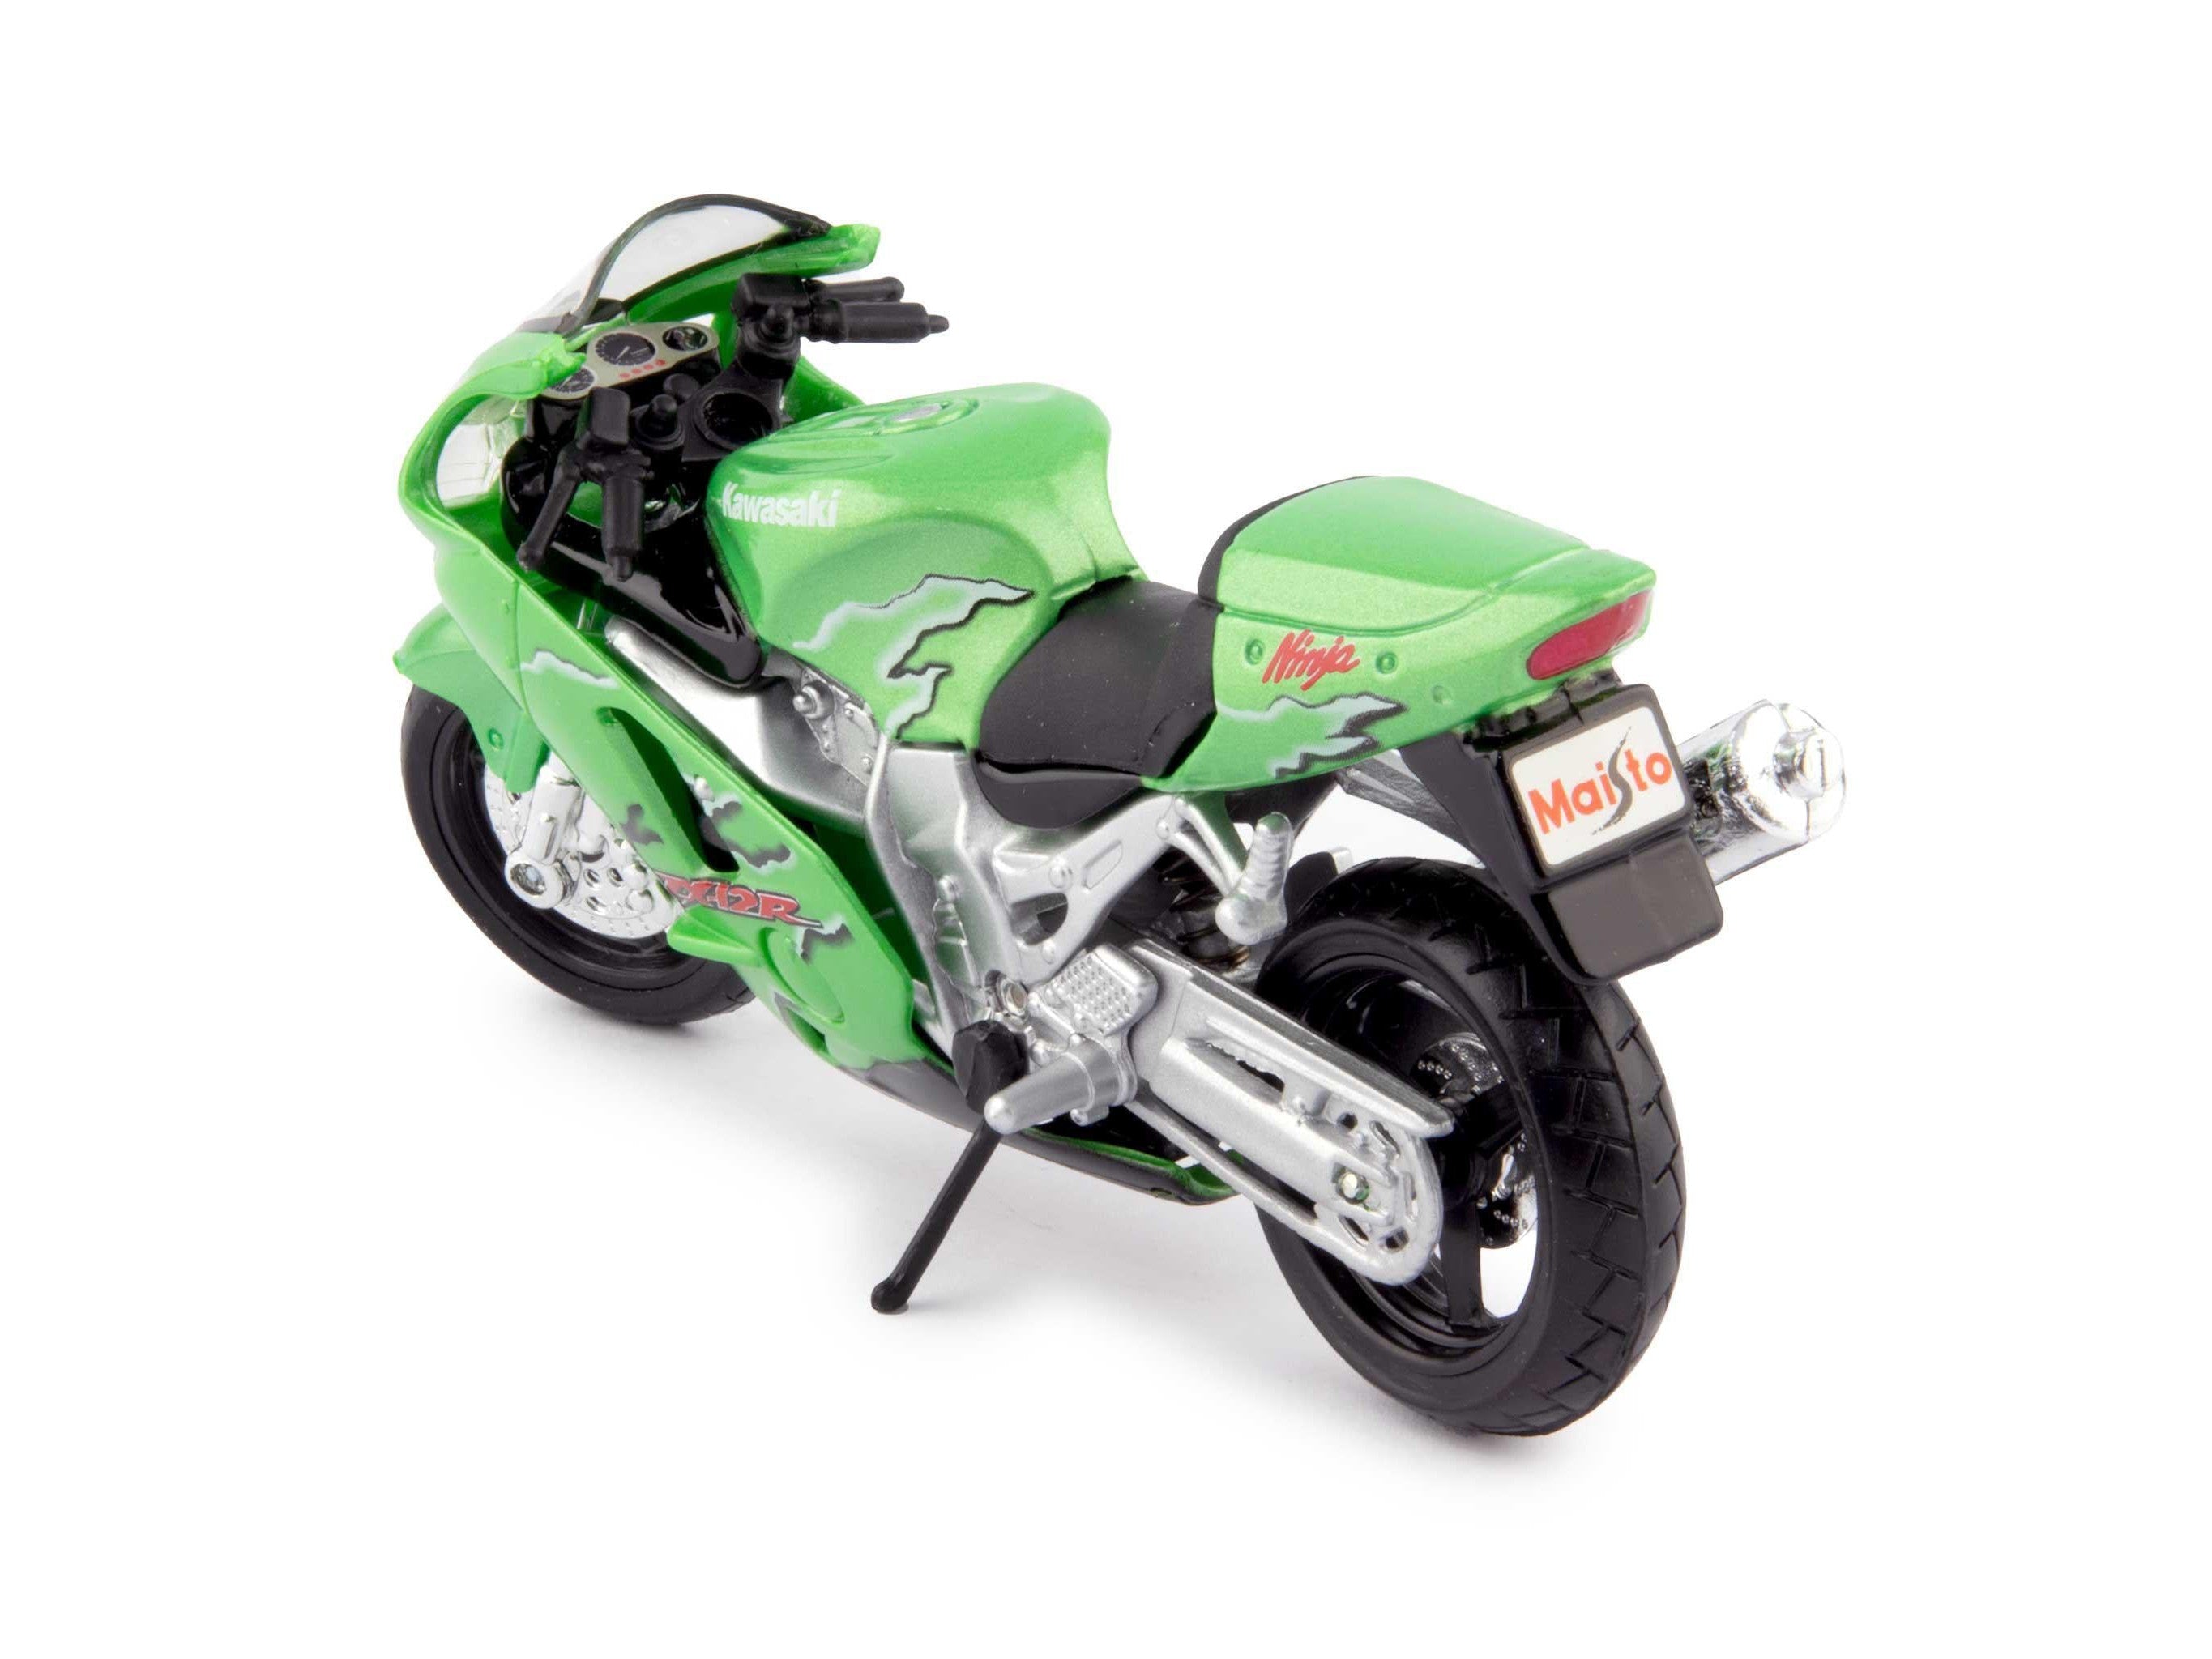 Kawasaki Ninja ZX-12R green - 1:18 Diecast Model Motorcycle